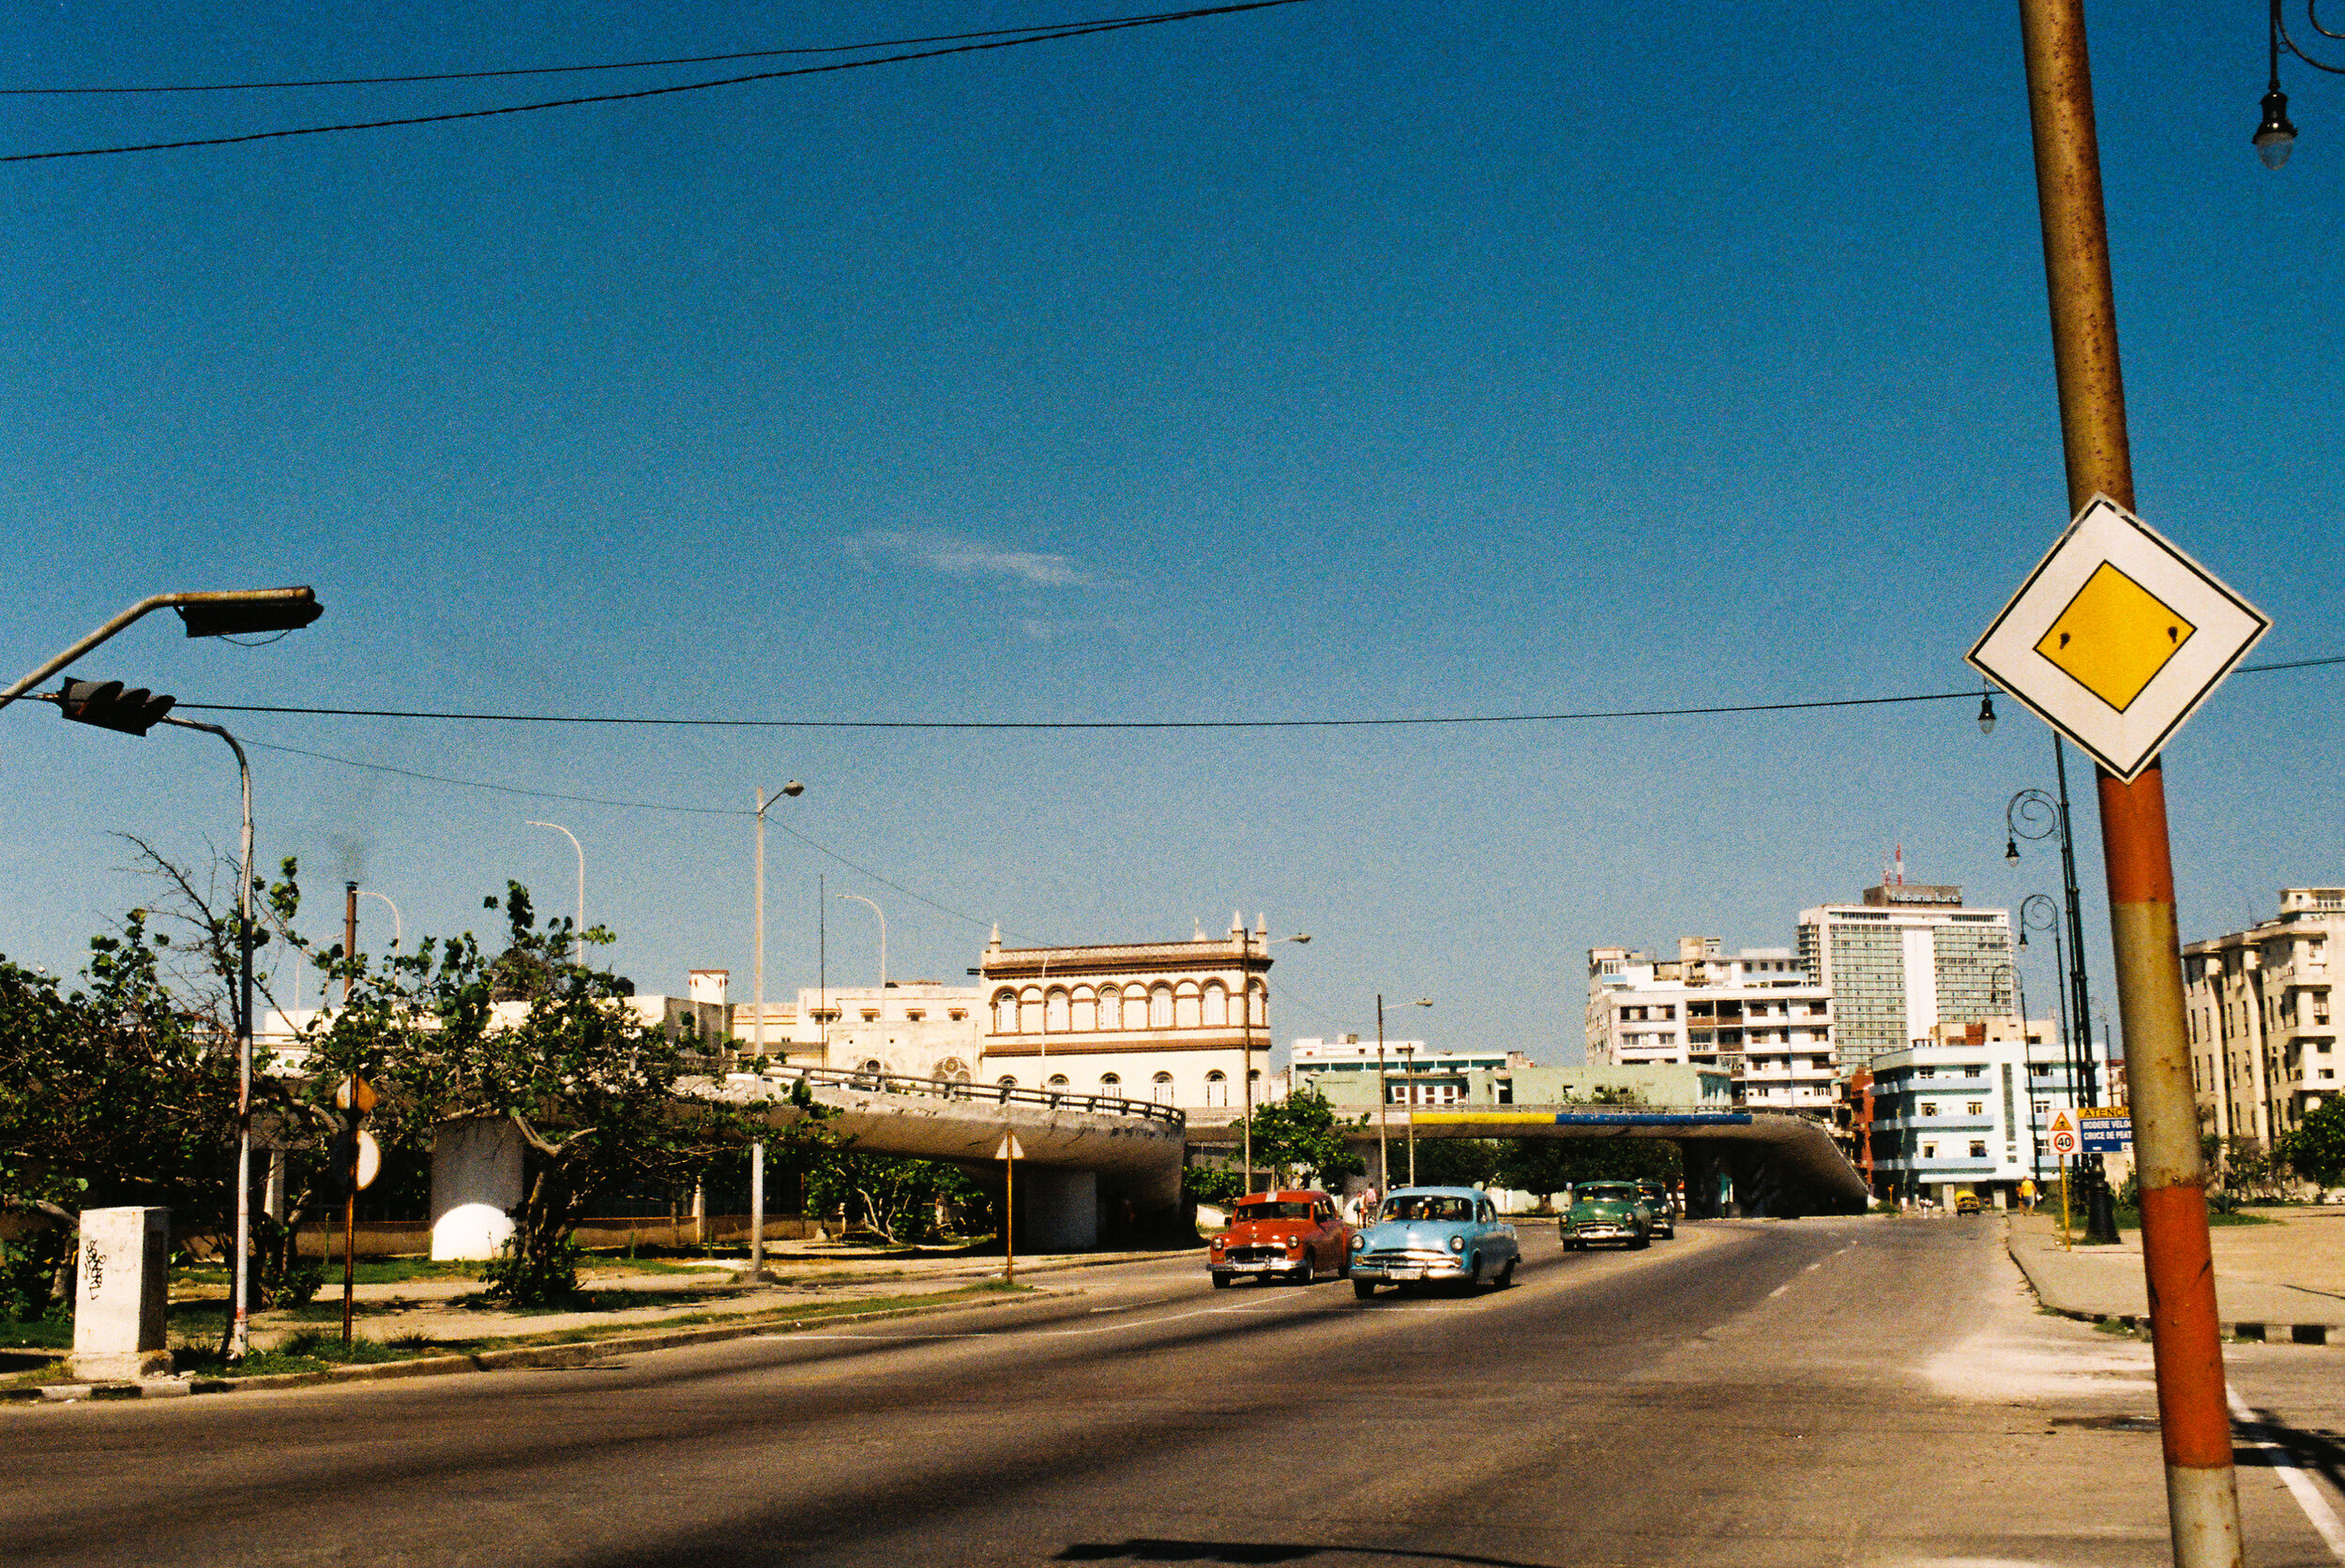 Cuba_35mm-20.jpg